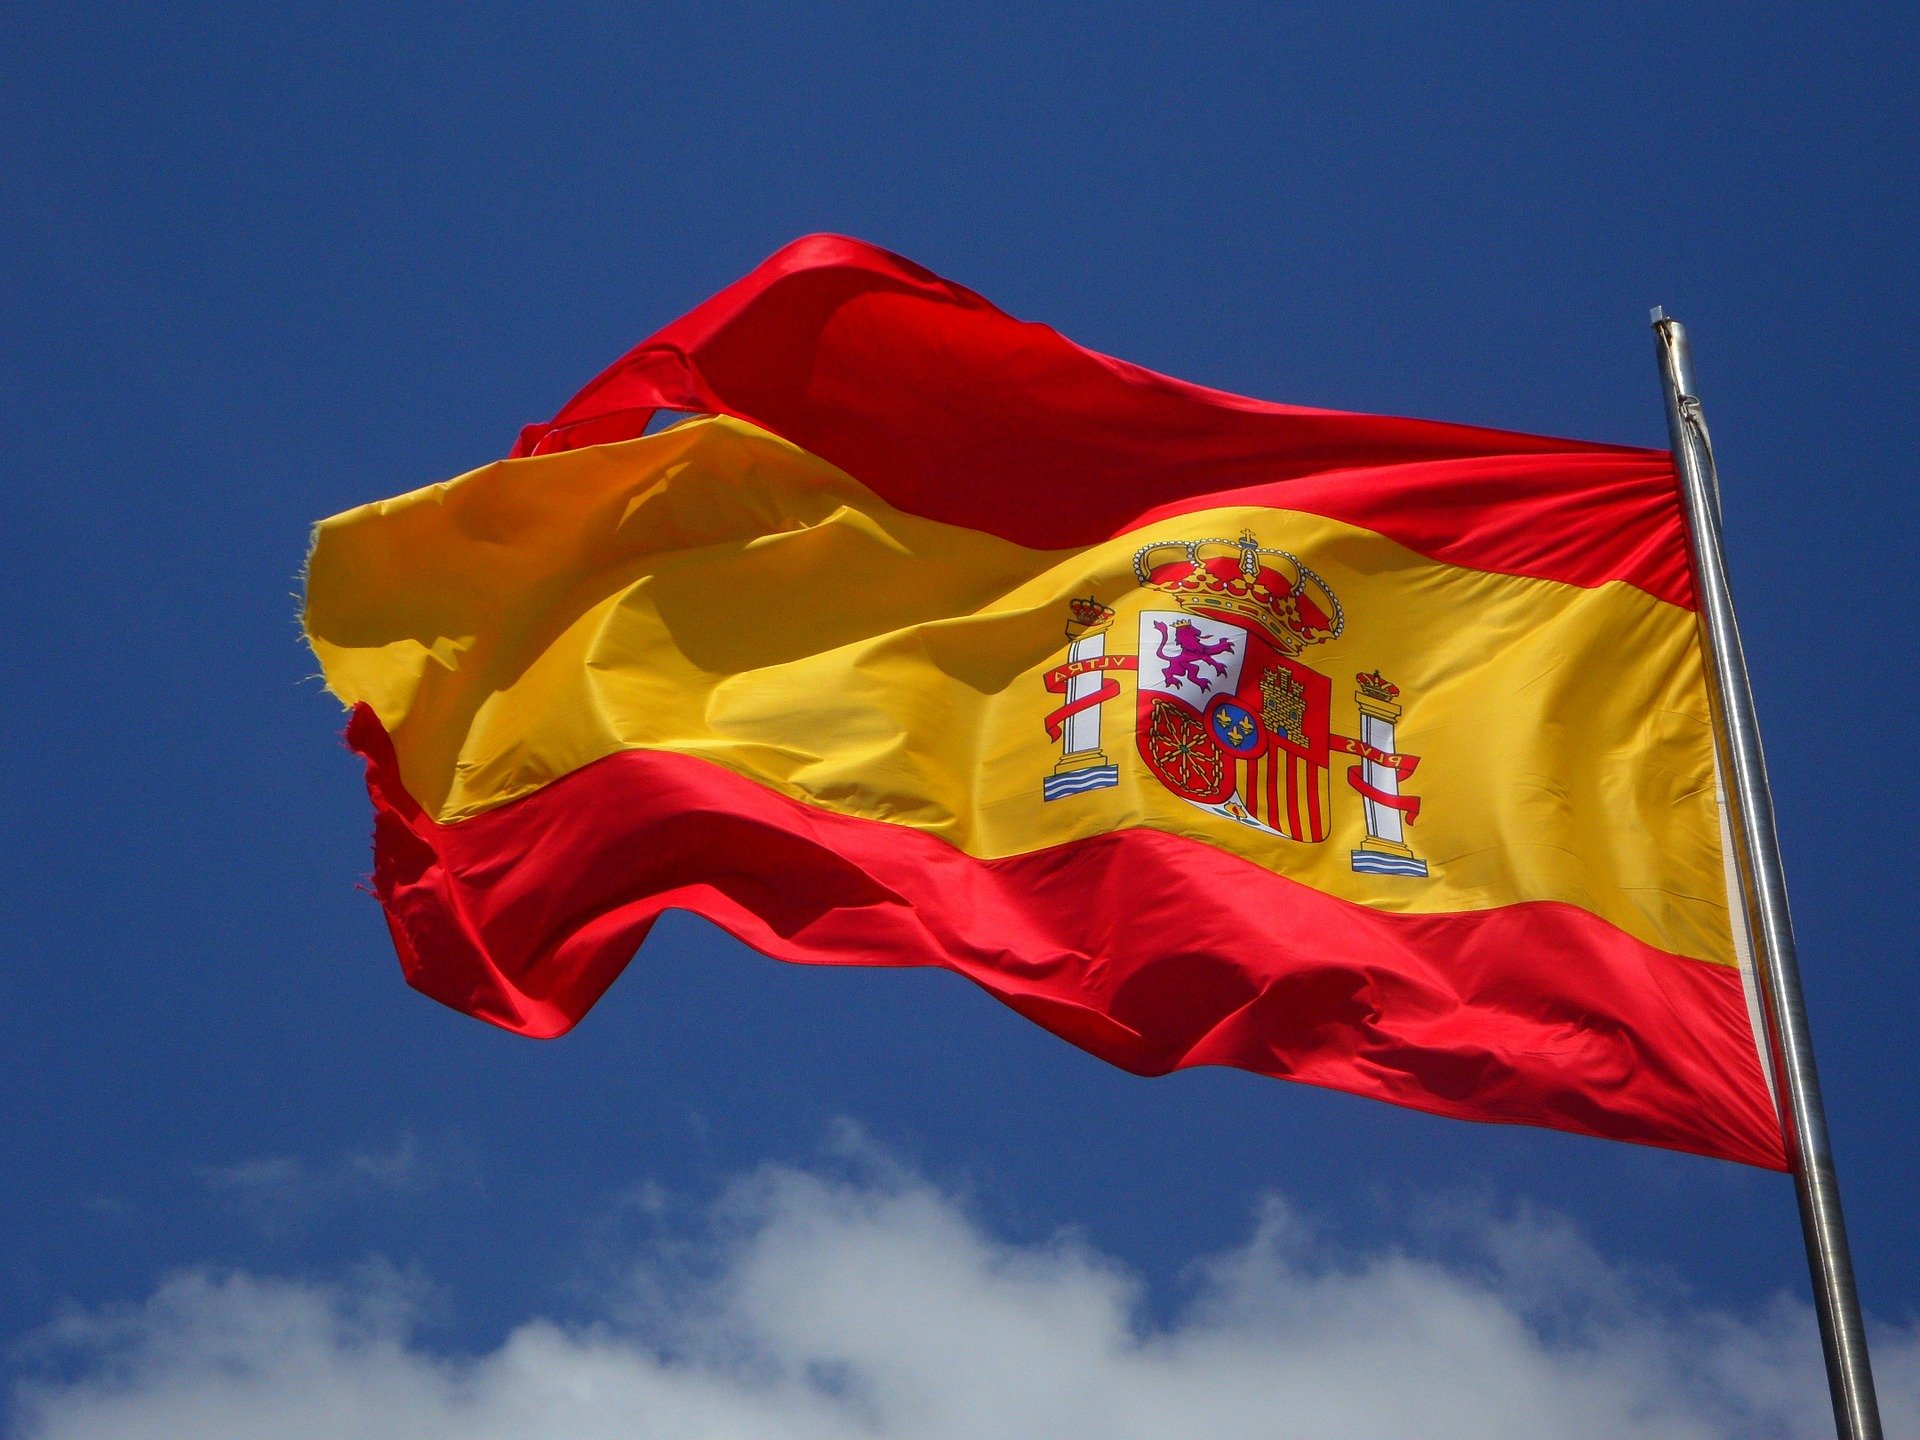 quiz z hiszpańskiego colores kolory test wiedzy łatwy tytuł flaga